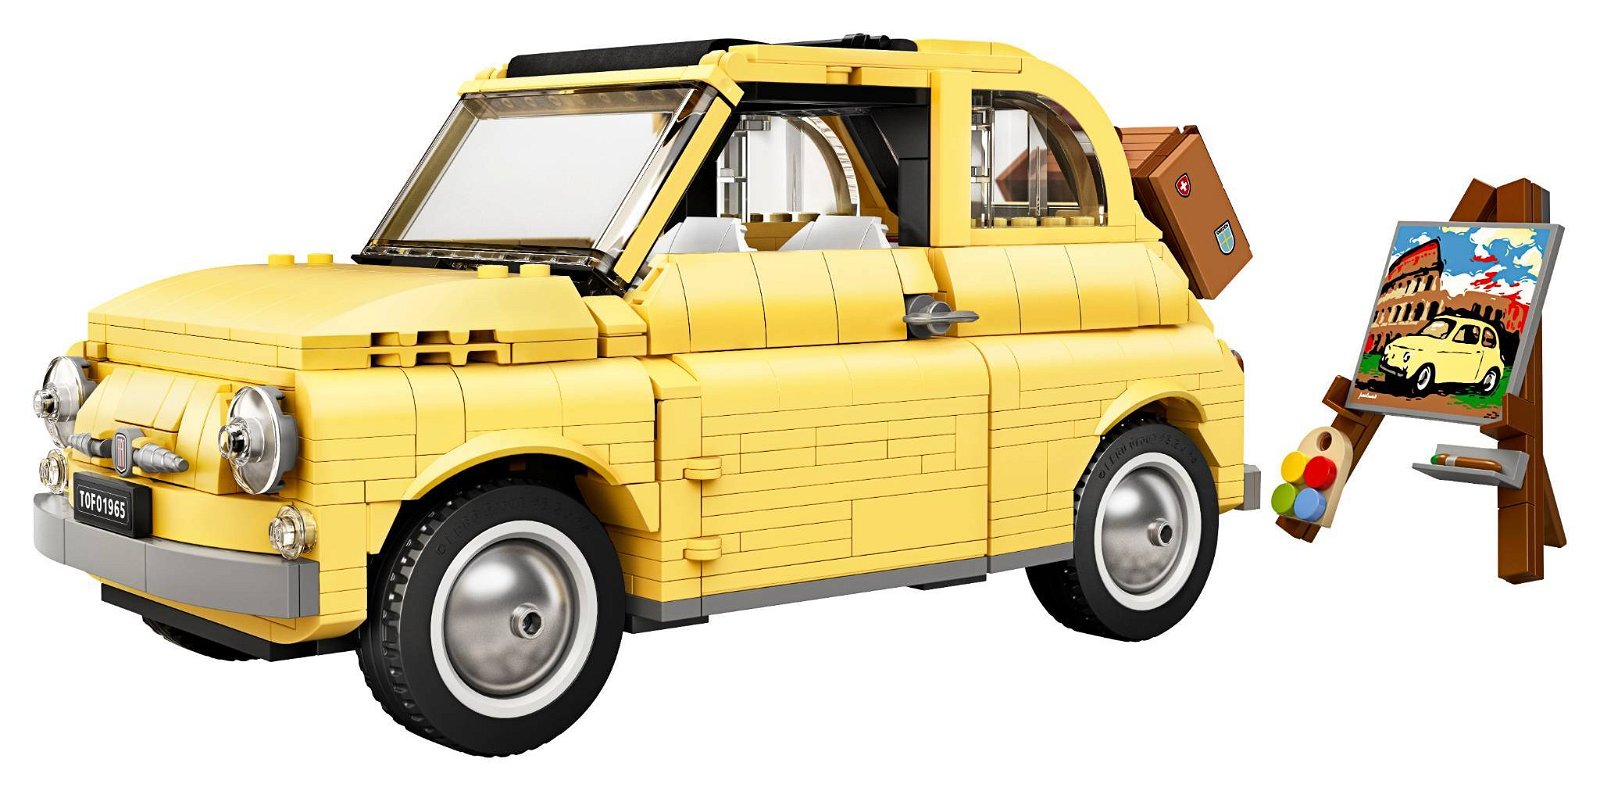 Immagine di LEGO set # 10271 FIAT 500: la recensione